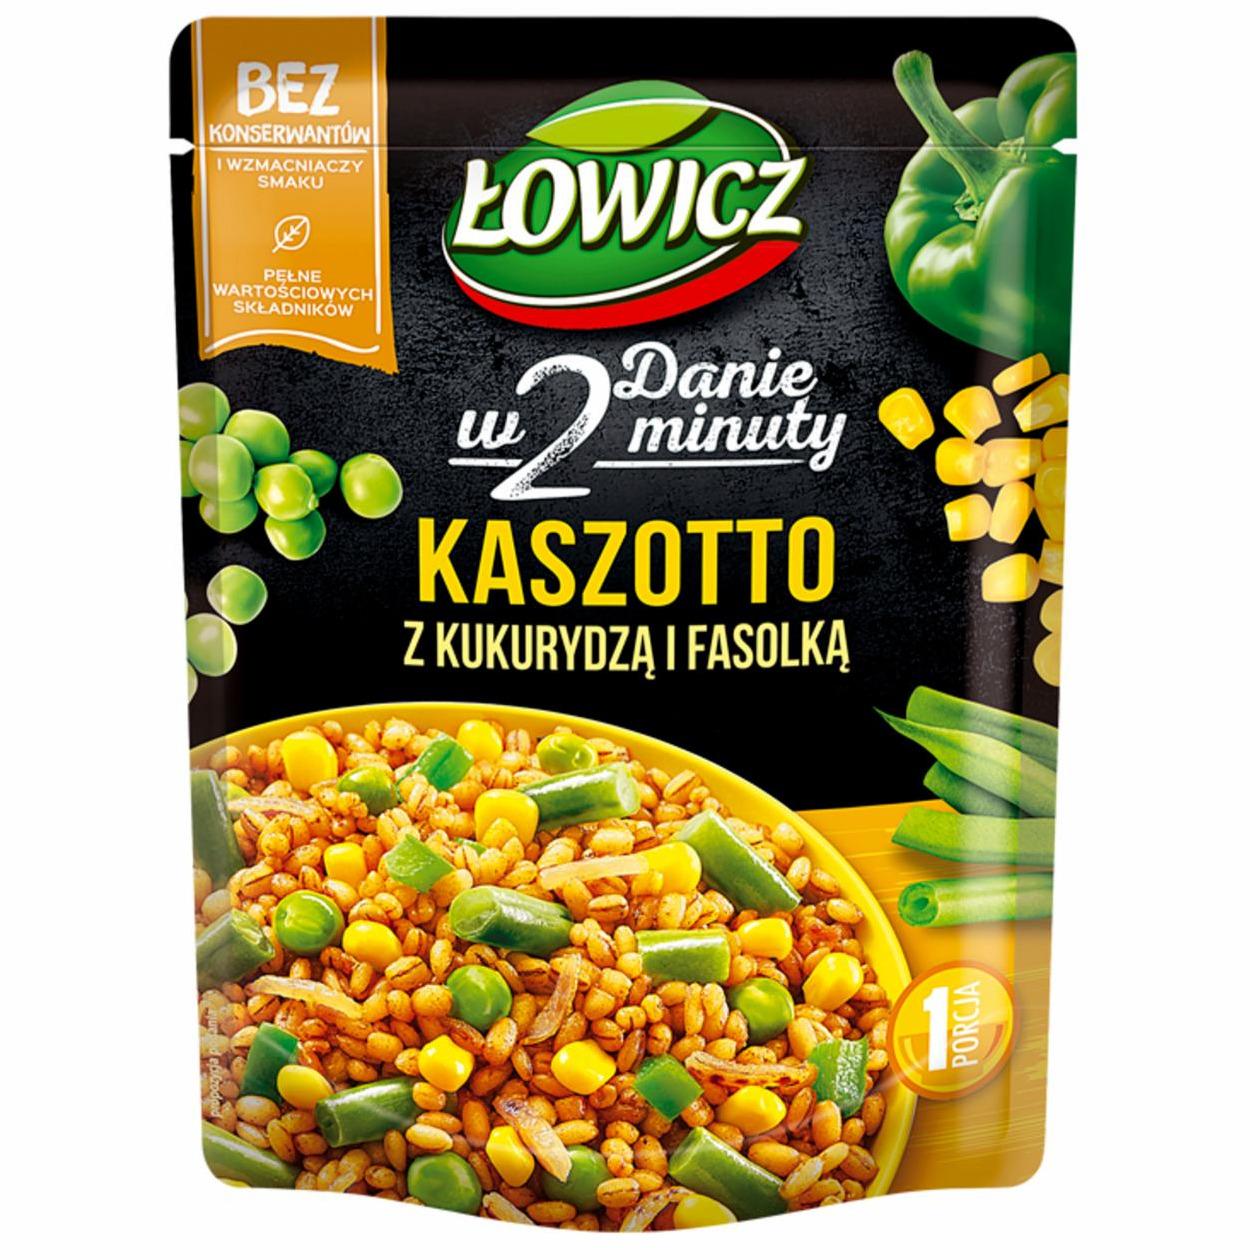 Zdjęcia - Kaszotto kasza pęczak z kukurydzą i fasolką Łowicz